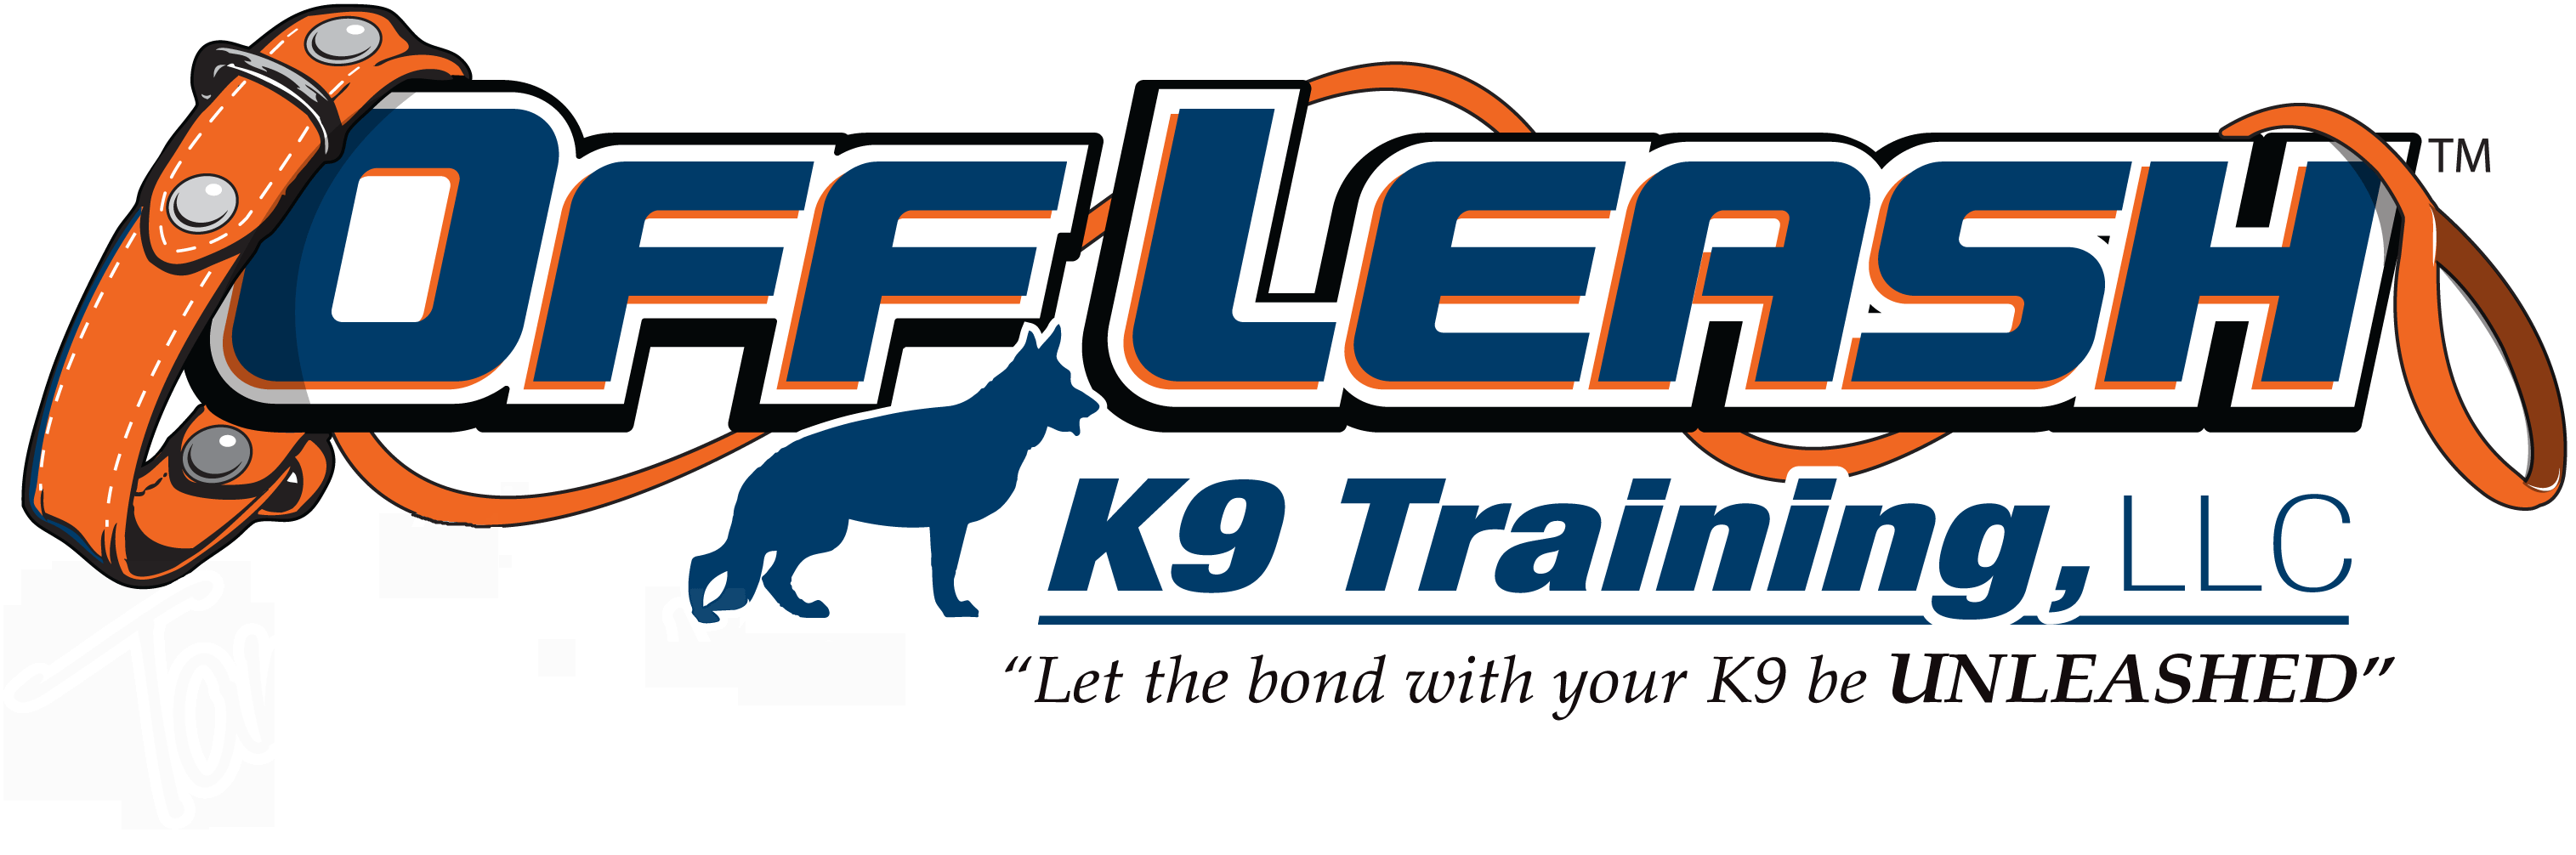 Offleash K9 Dog Training in Laredo Texas